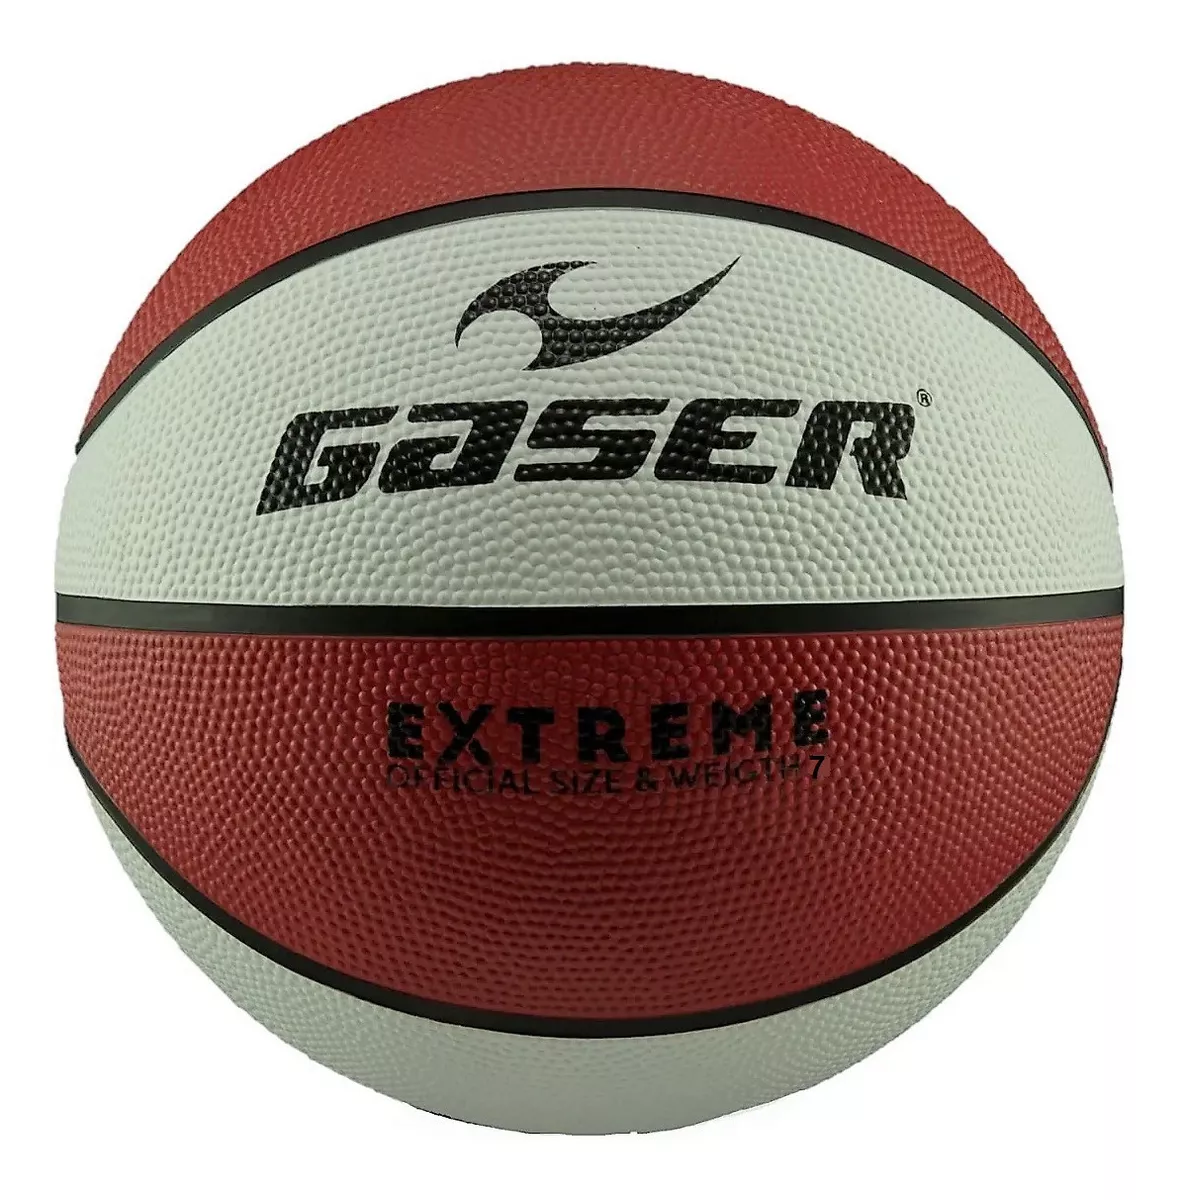 Balón Basketball Extreme Multicolor No. 7 Gaser Envío Gratis